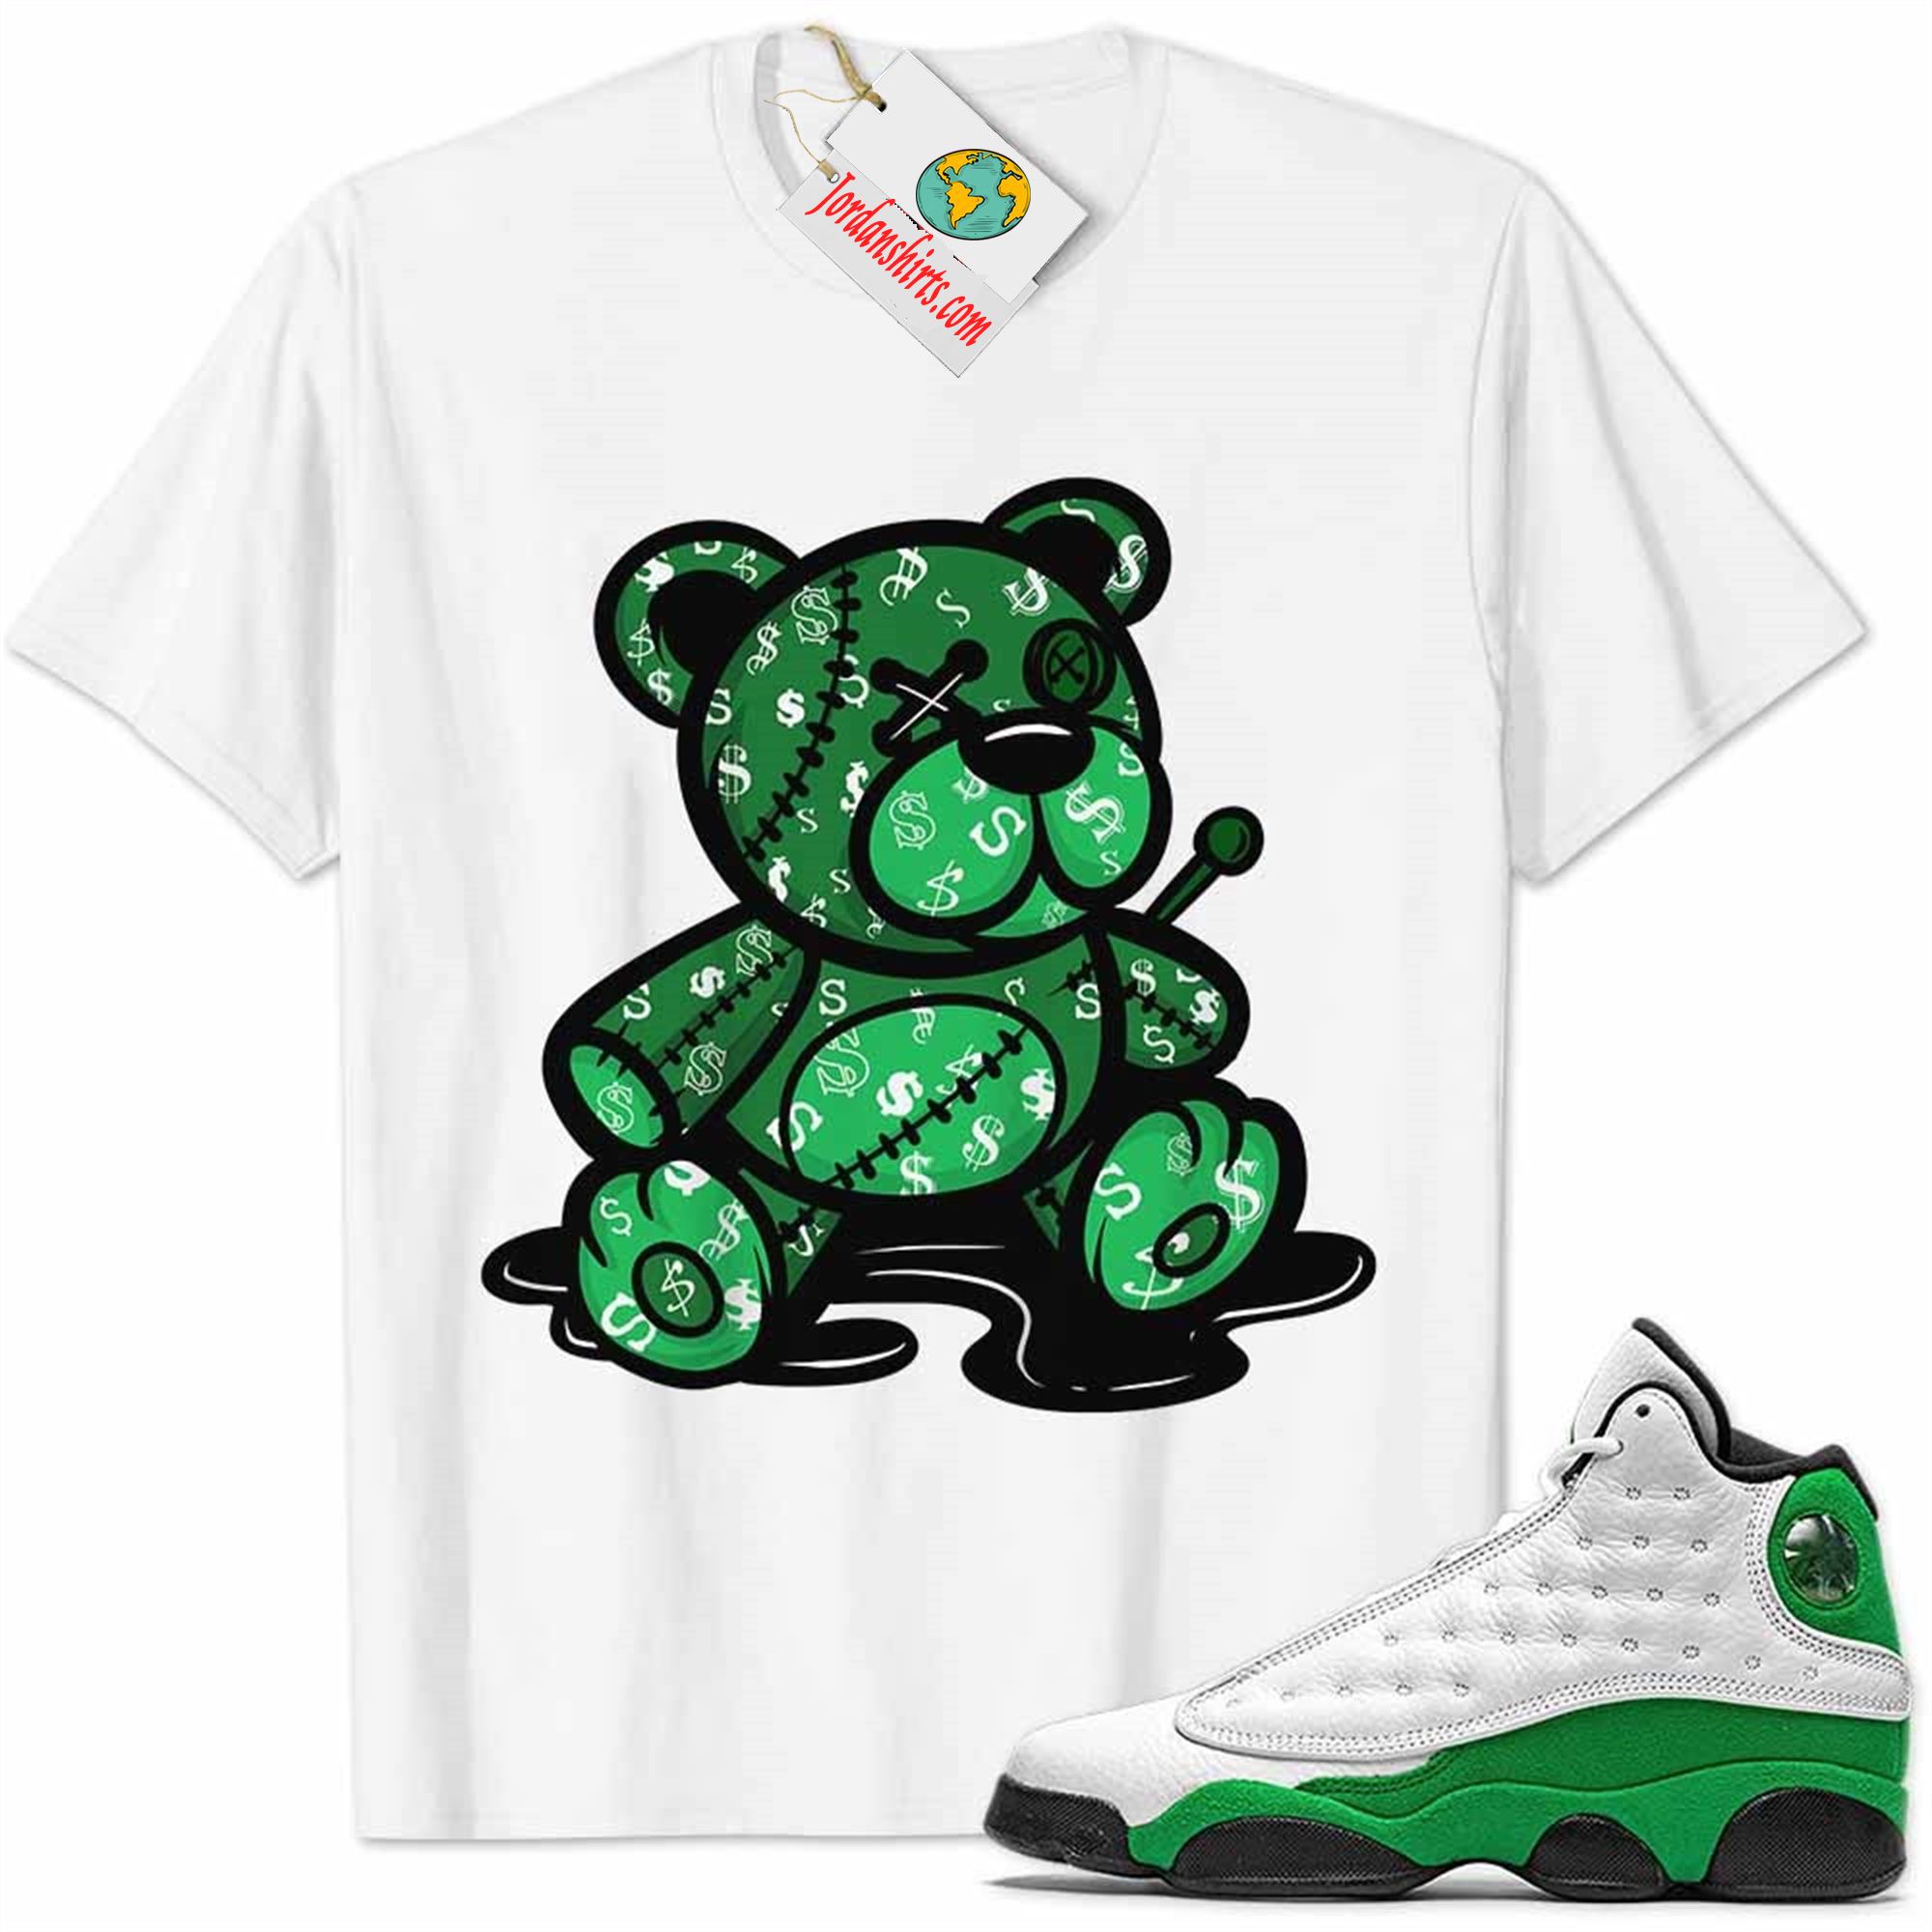 Jordan 13 Shirt, Jordan 13 Lucky Green Shirt Teddy Bear All Money In White Size Up To 5xl